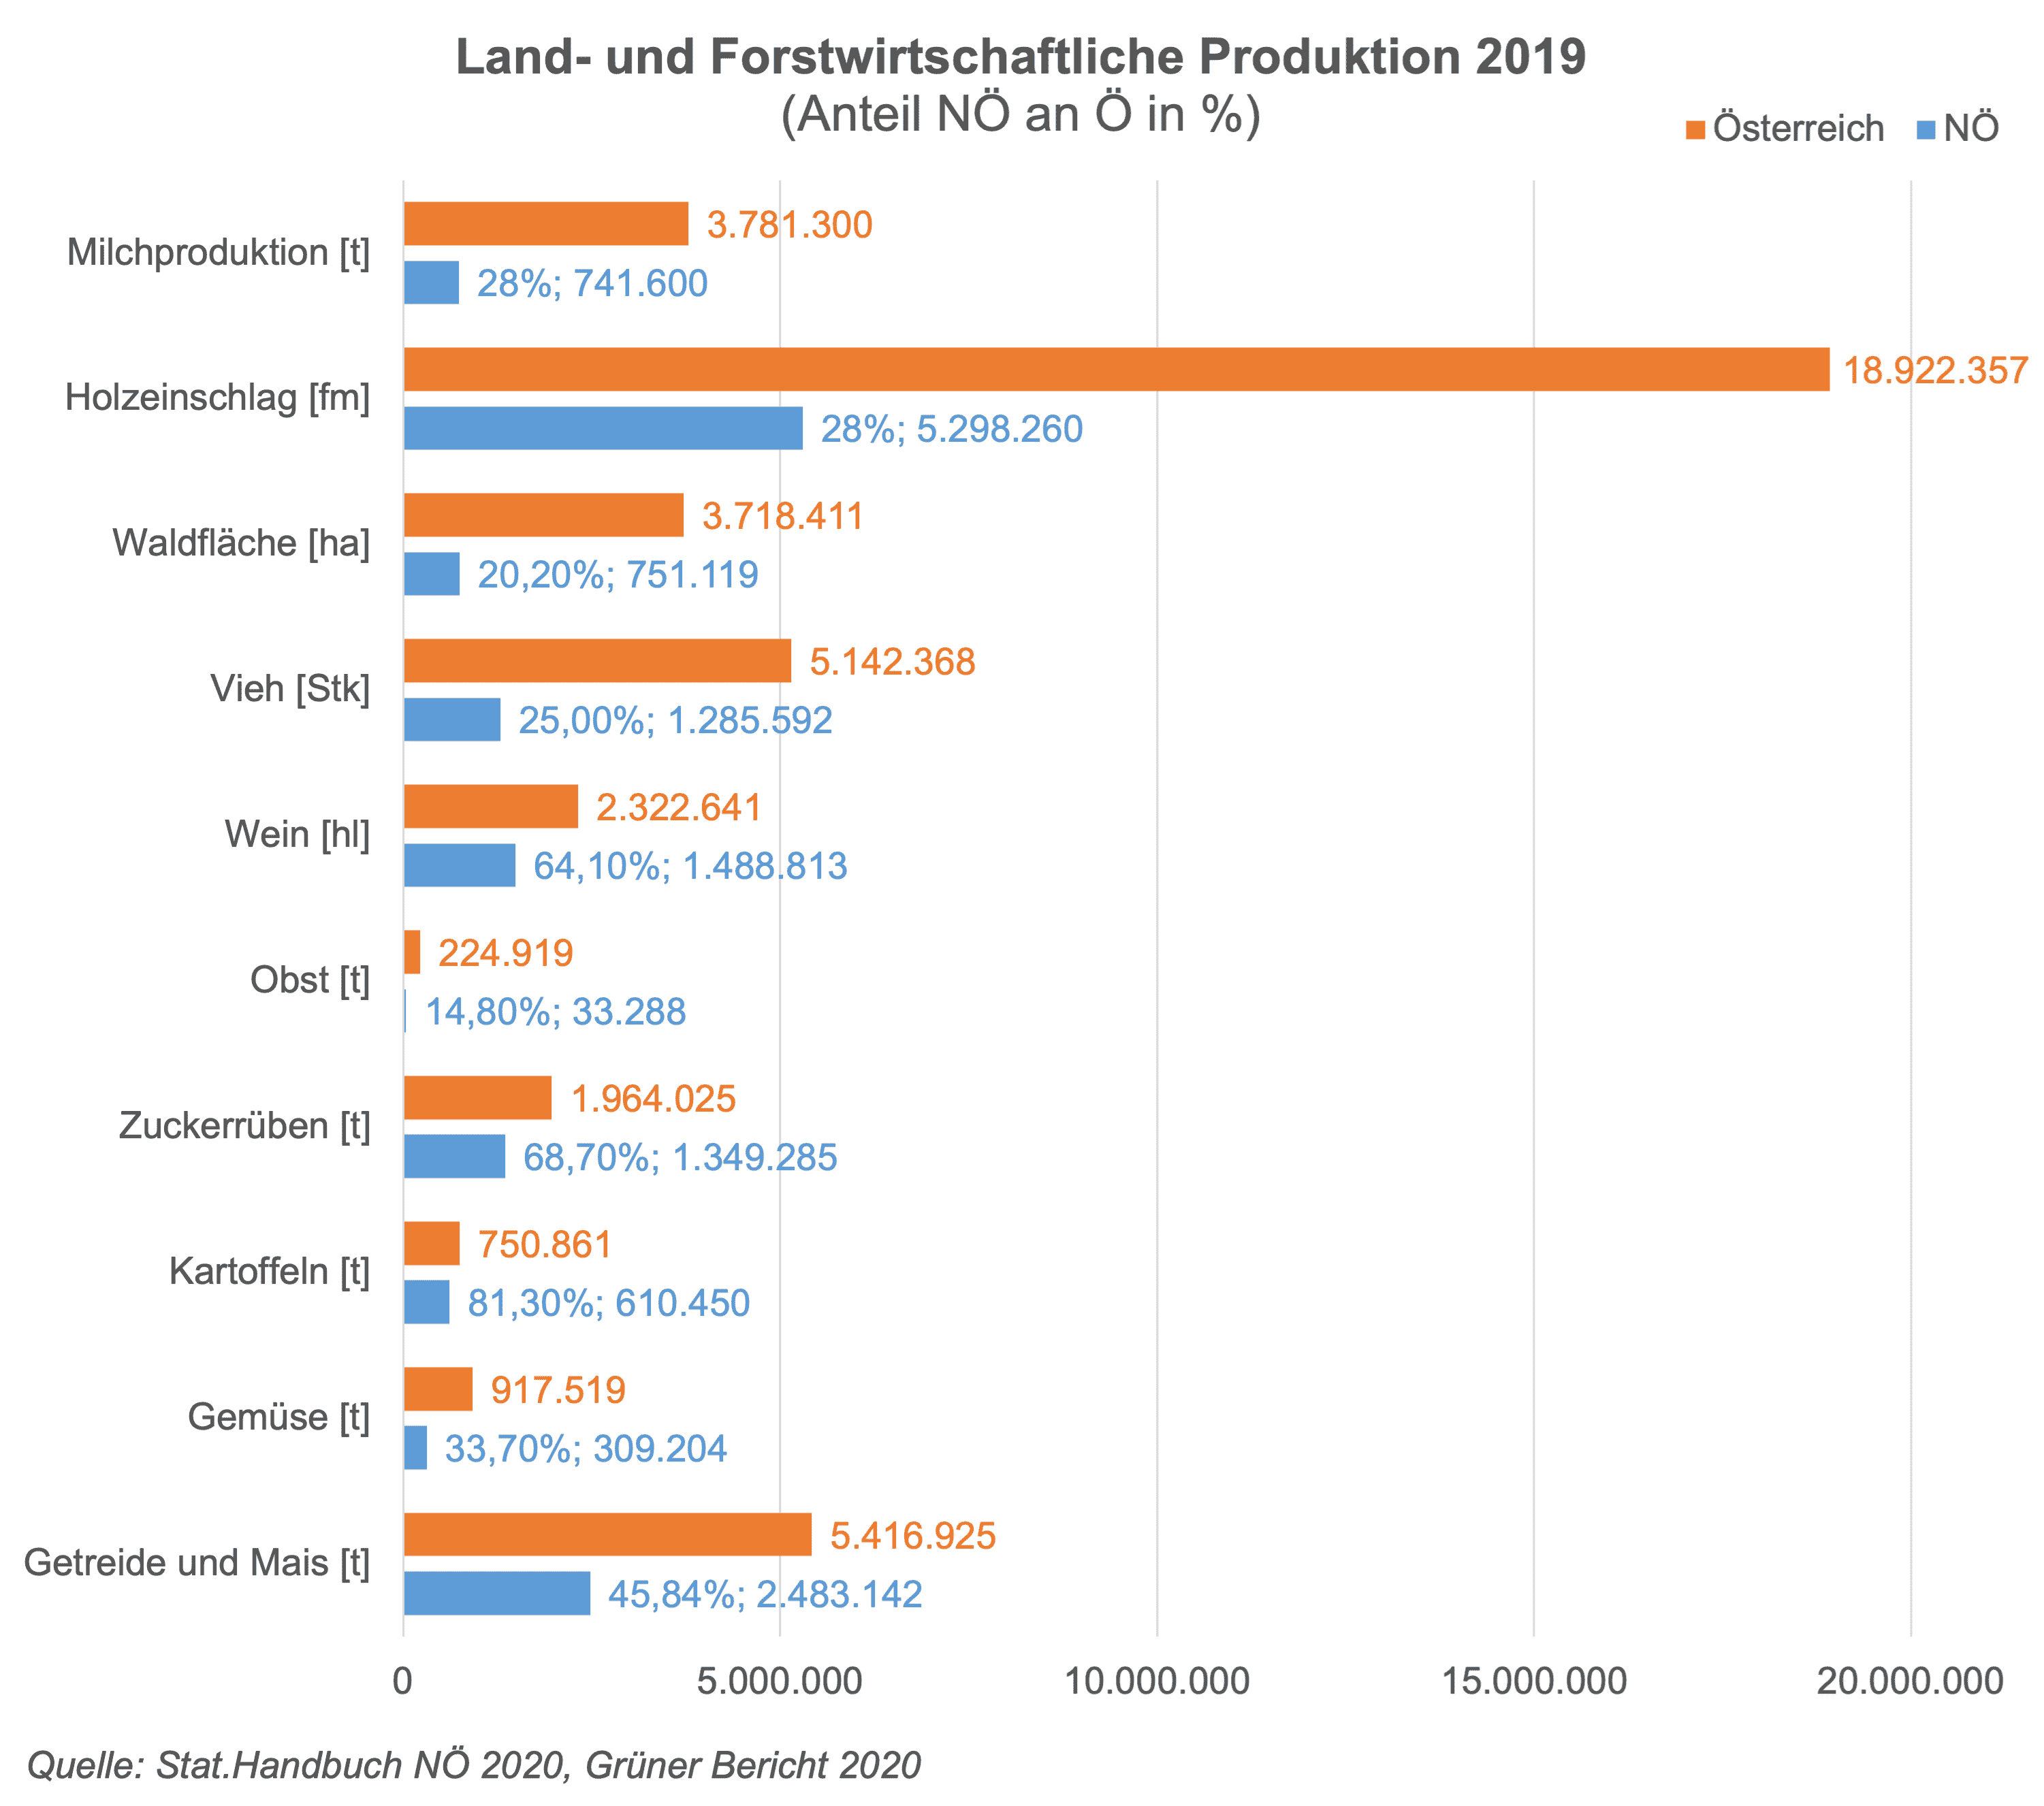 NÖ ist das flächenmäßig größte Bundesland und nimmt damit eine wesentliche Stellung bei der Versorgung der österreichischen Bevölkerung mit land- und forstwirtschaftlichen Produkten ein. Das Landwirtschaftsjahr 2019 war durch deutlich gestiegene Erlöse in der Schweineproduktion geprägt. Demgegenüber lagen die Produktionswerte von Wein, insbesondere aber von Obst deutlich unter den sehr guten Vorjahresergebnissen. Ebenfalls niedriger als 2018 fiel der Wert der Rinderproduktion aus. Die gegenläufigen Entwicklungen in den verschiedenen Produktionssparten hatten auf Bundesebene in Summe einen leichten Anstieg des landwirtschaftlichen Gesamtproduktionswerts (+1,6%) zur Folge. Auf Ebene der Bundesländer stellt sich die Entwicklung jedoch differenzierter dar. In Niederösterreich betrug der Produktionswert des landwirtschaftlichen Wirtschaftsbereichs 2019 rd. 2,4 Mrd. Euro, was knapp einem Drittel des Bundesergebnisses von rd. 7,5 Mrd. Euro entsprach.